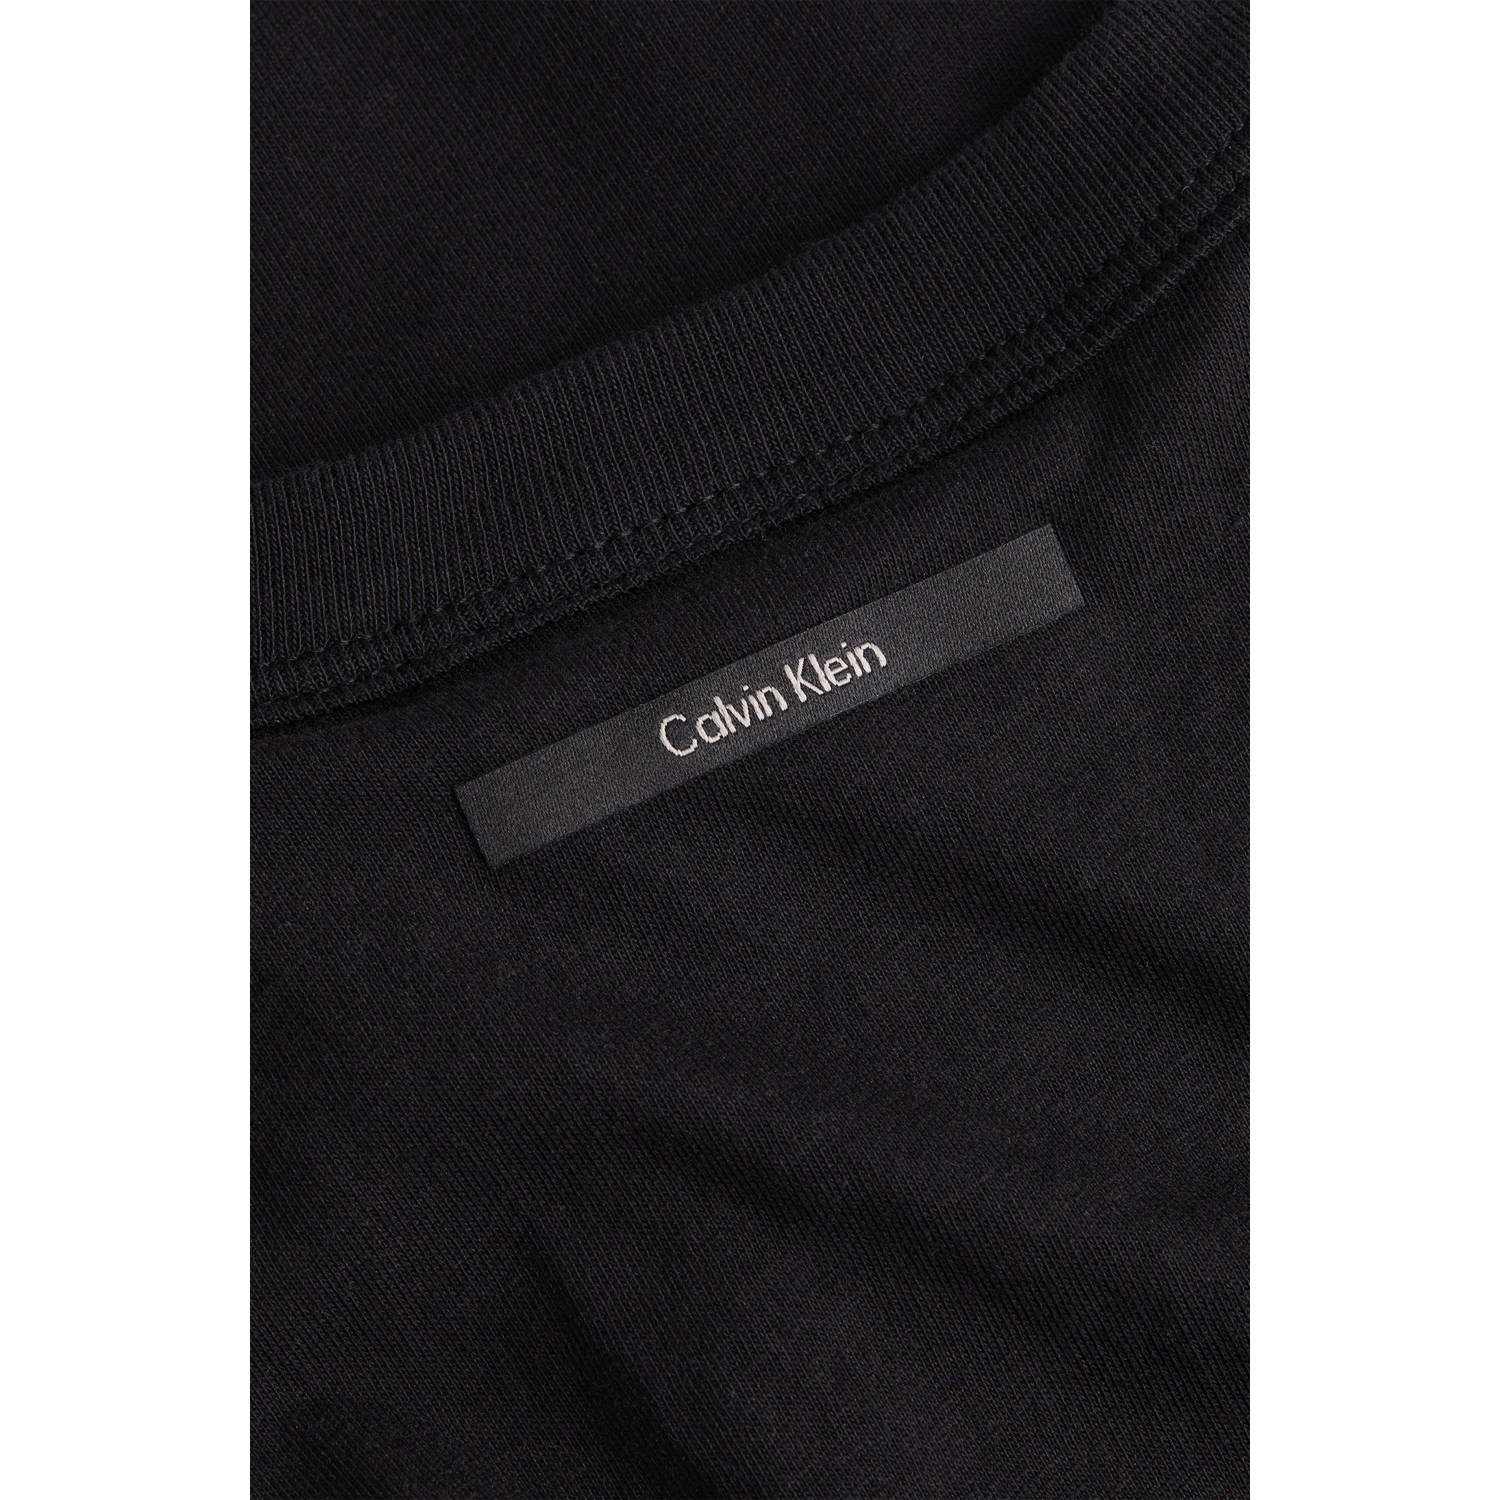 Calvin Klein top zwart